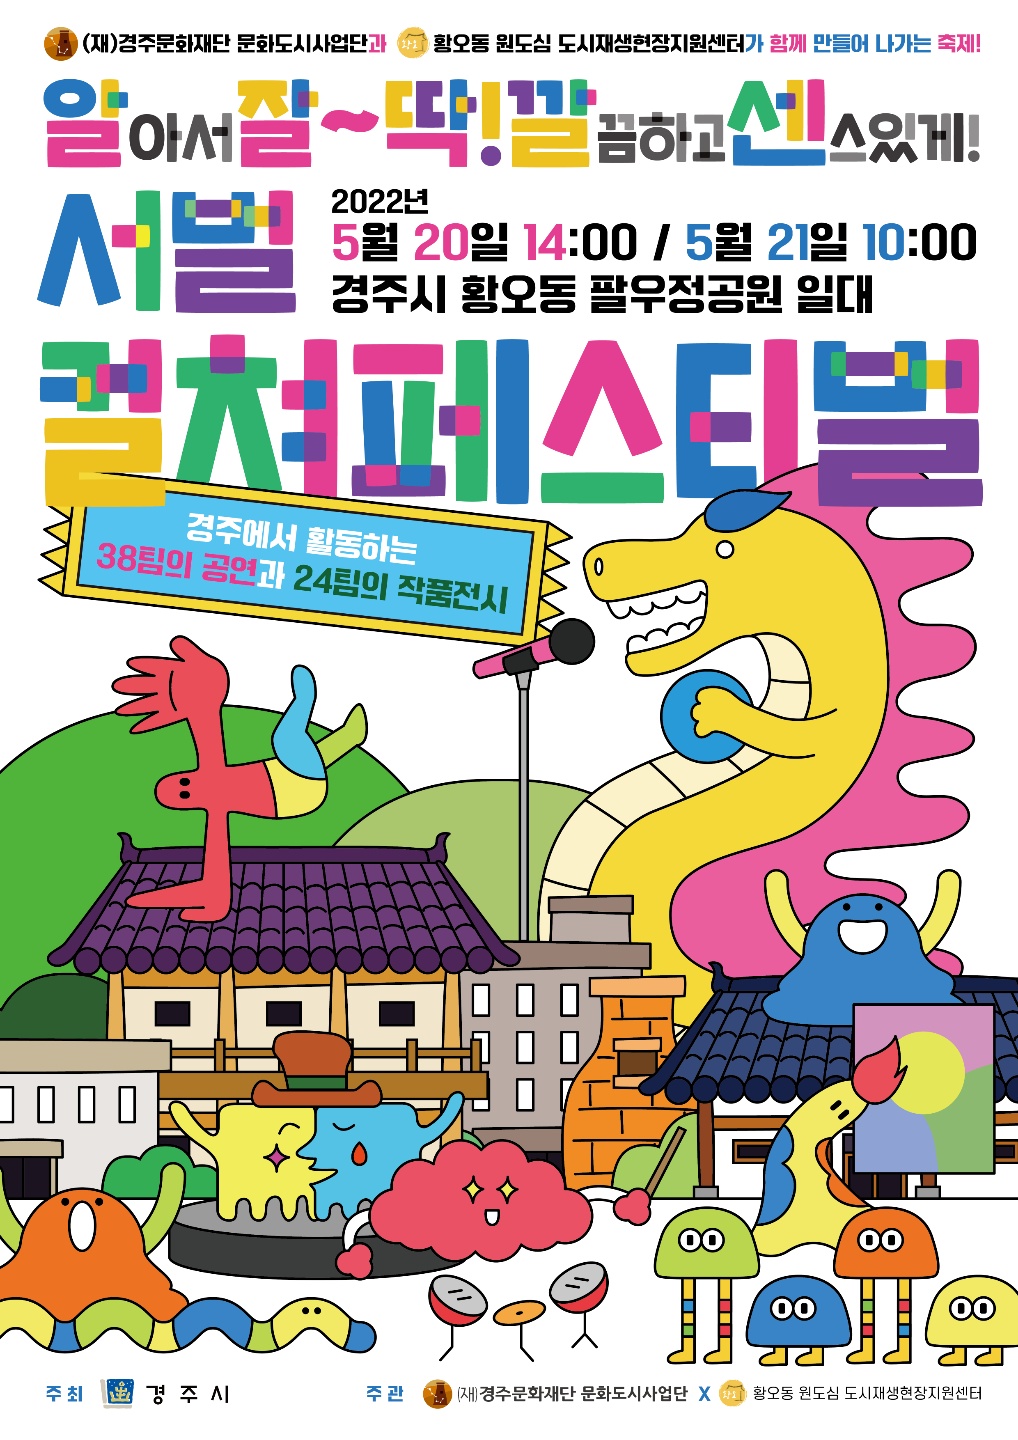 경주시의 권역별 로컬 콘텐츠 문화예술 활성화 사업 중 5월 20일~21일 양일간 팔우정 공원에서 개최되는  컬쳐페스티벌 포스터